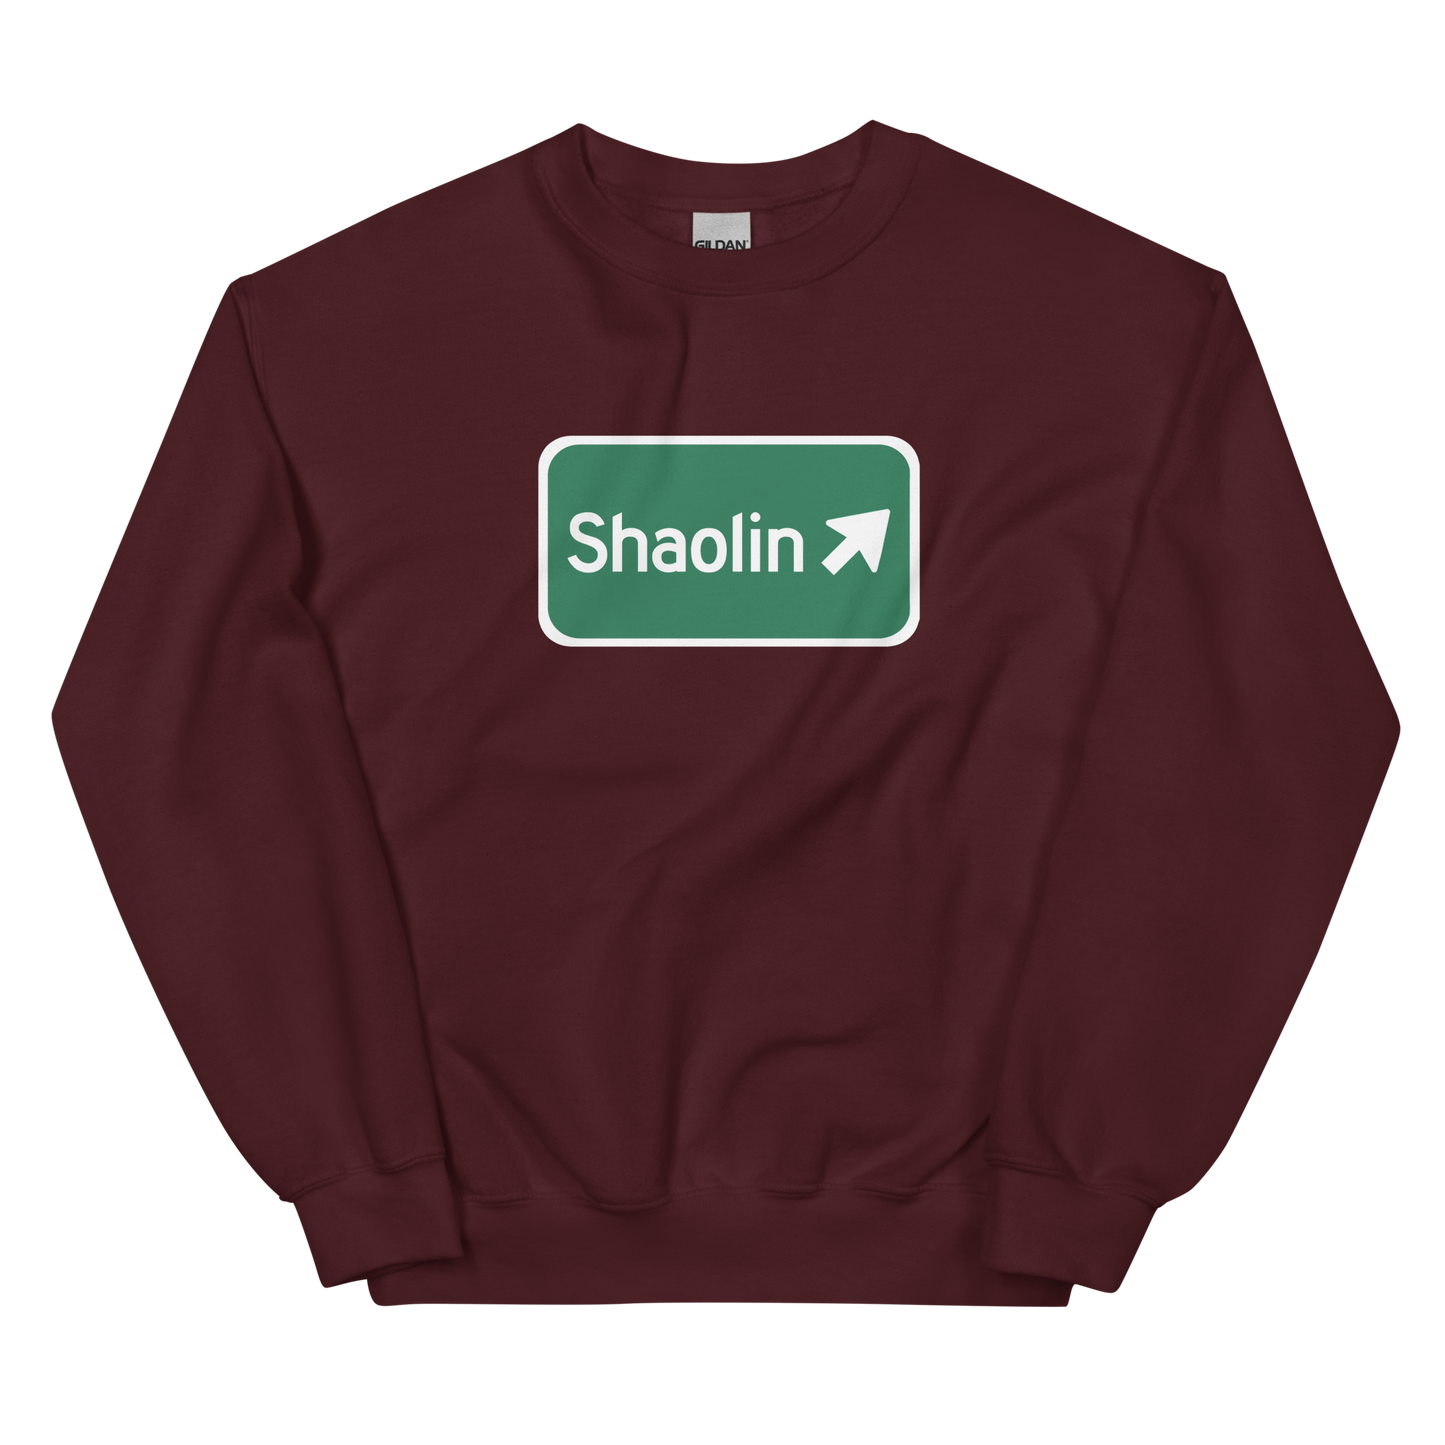 Shaolin sign crewneck sweatshirt